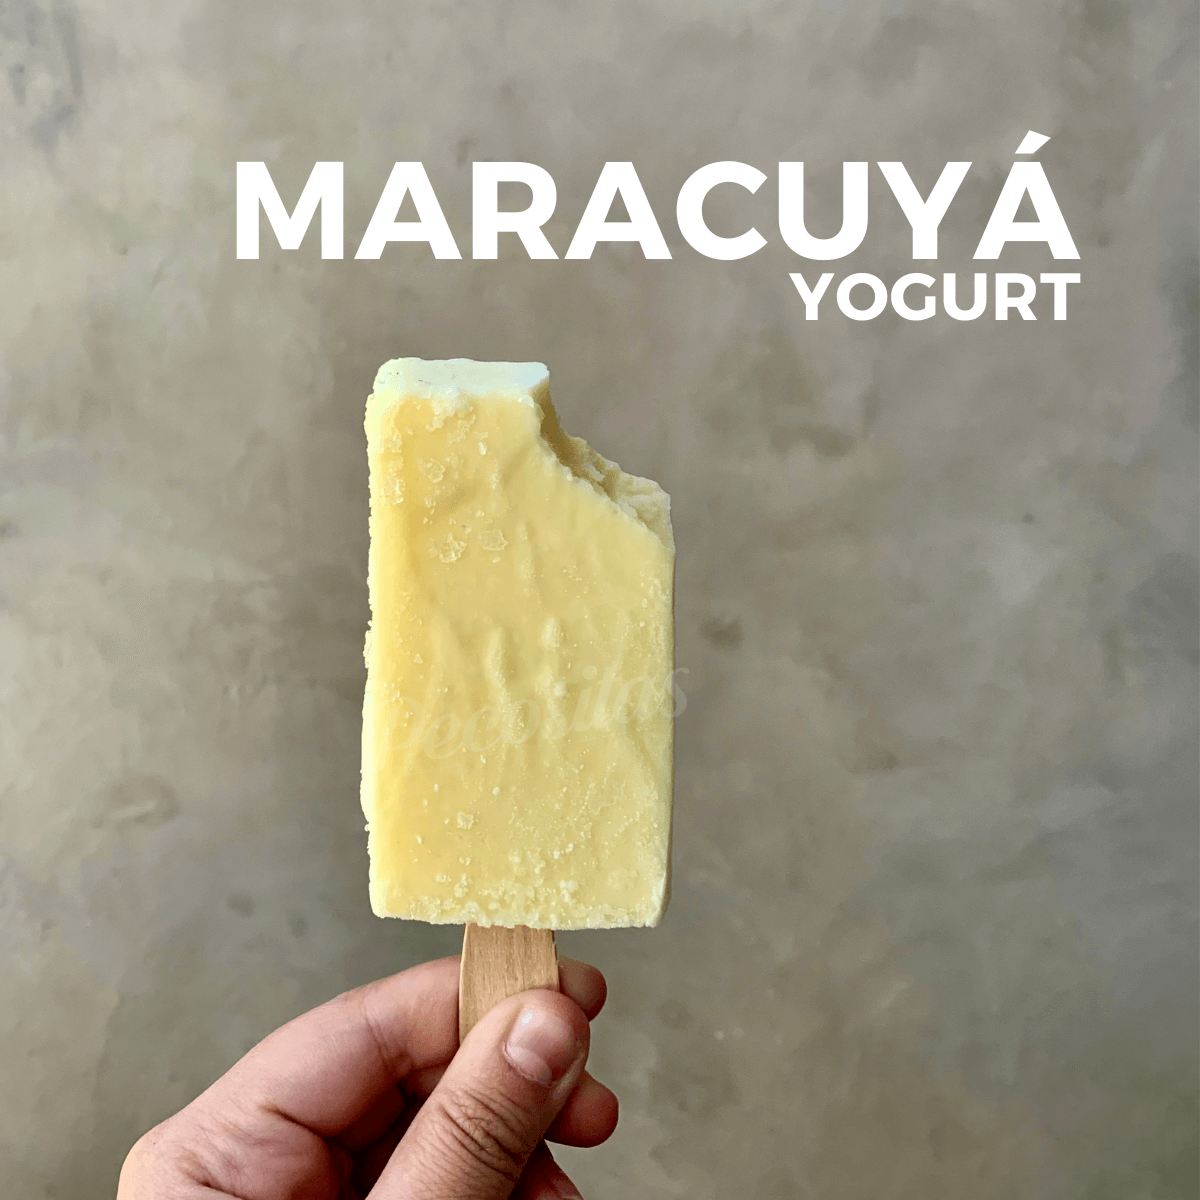  Helado de Yogurt con Maracuyá de PuraFruta 100% Natural.   Paleta de 90 Gramos.   